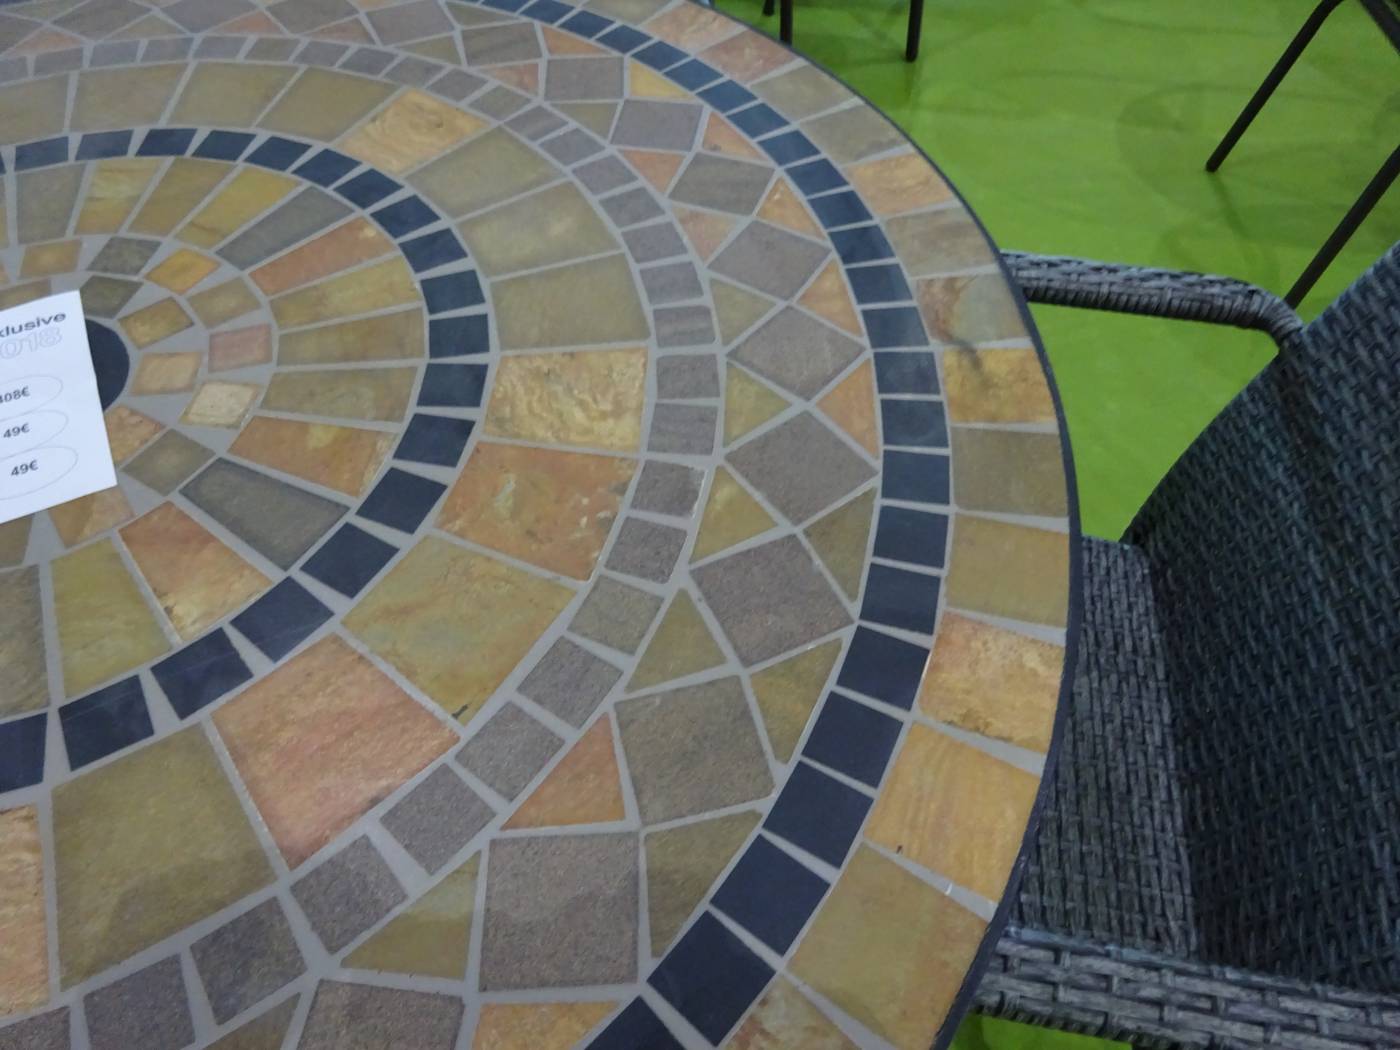 Set Mosaico Leila-Shifa-100-4 - Conjunto de forja color gris: 1 mesa redonda con panel mosaico de marmol  + 4 sillones de forja + 4 cojines